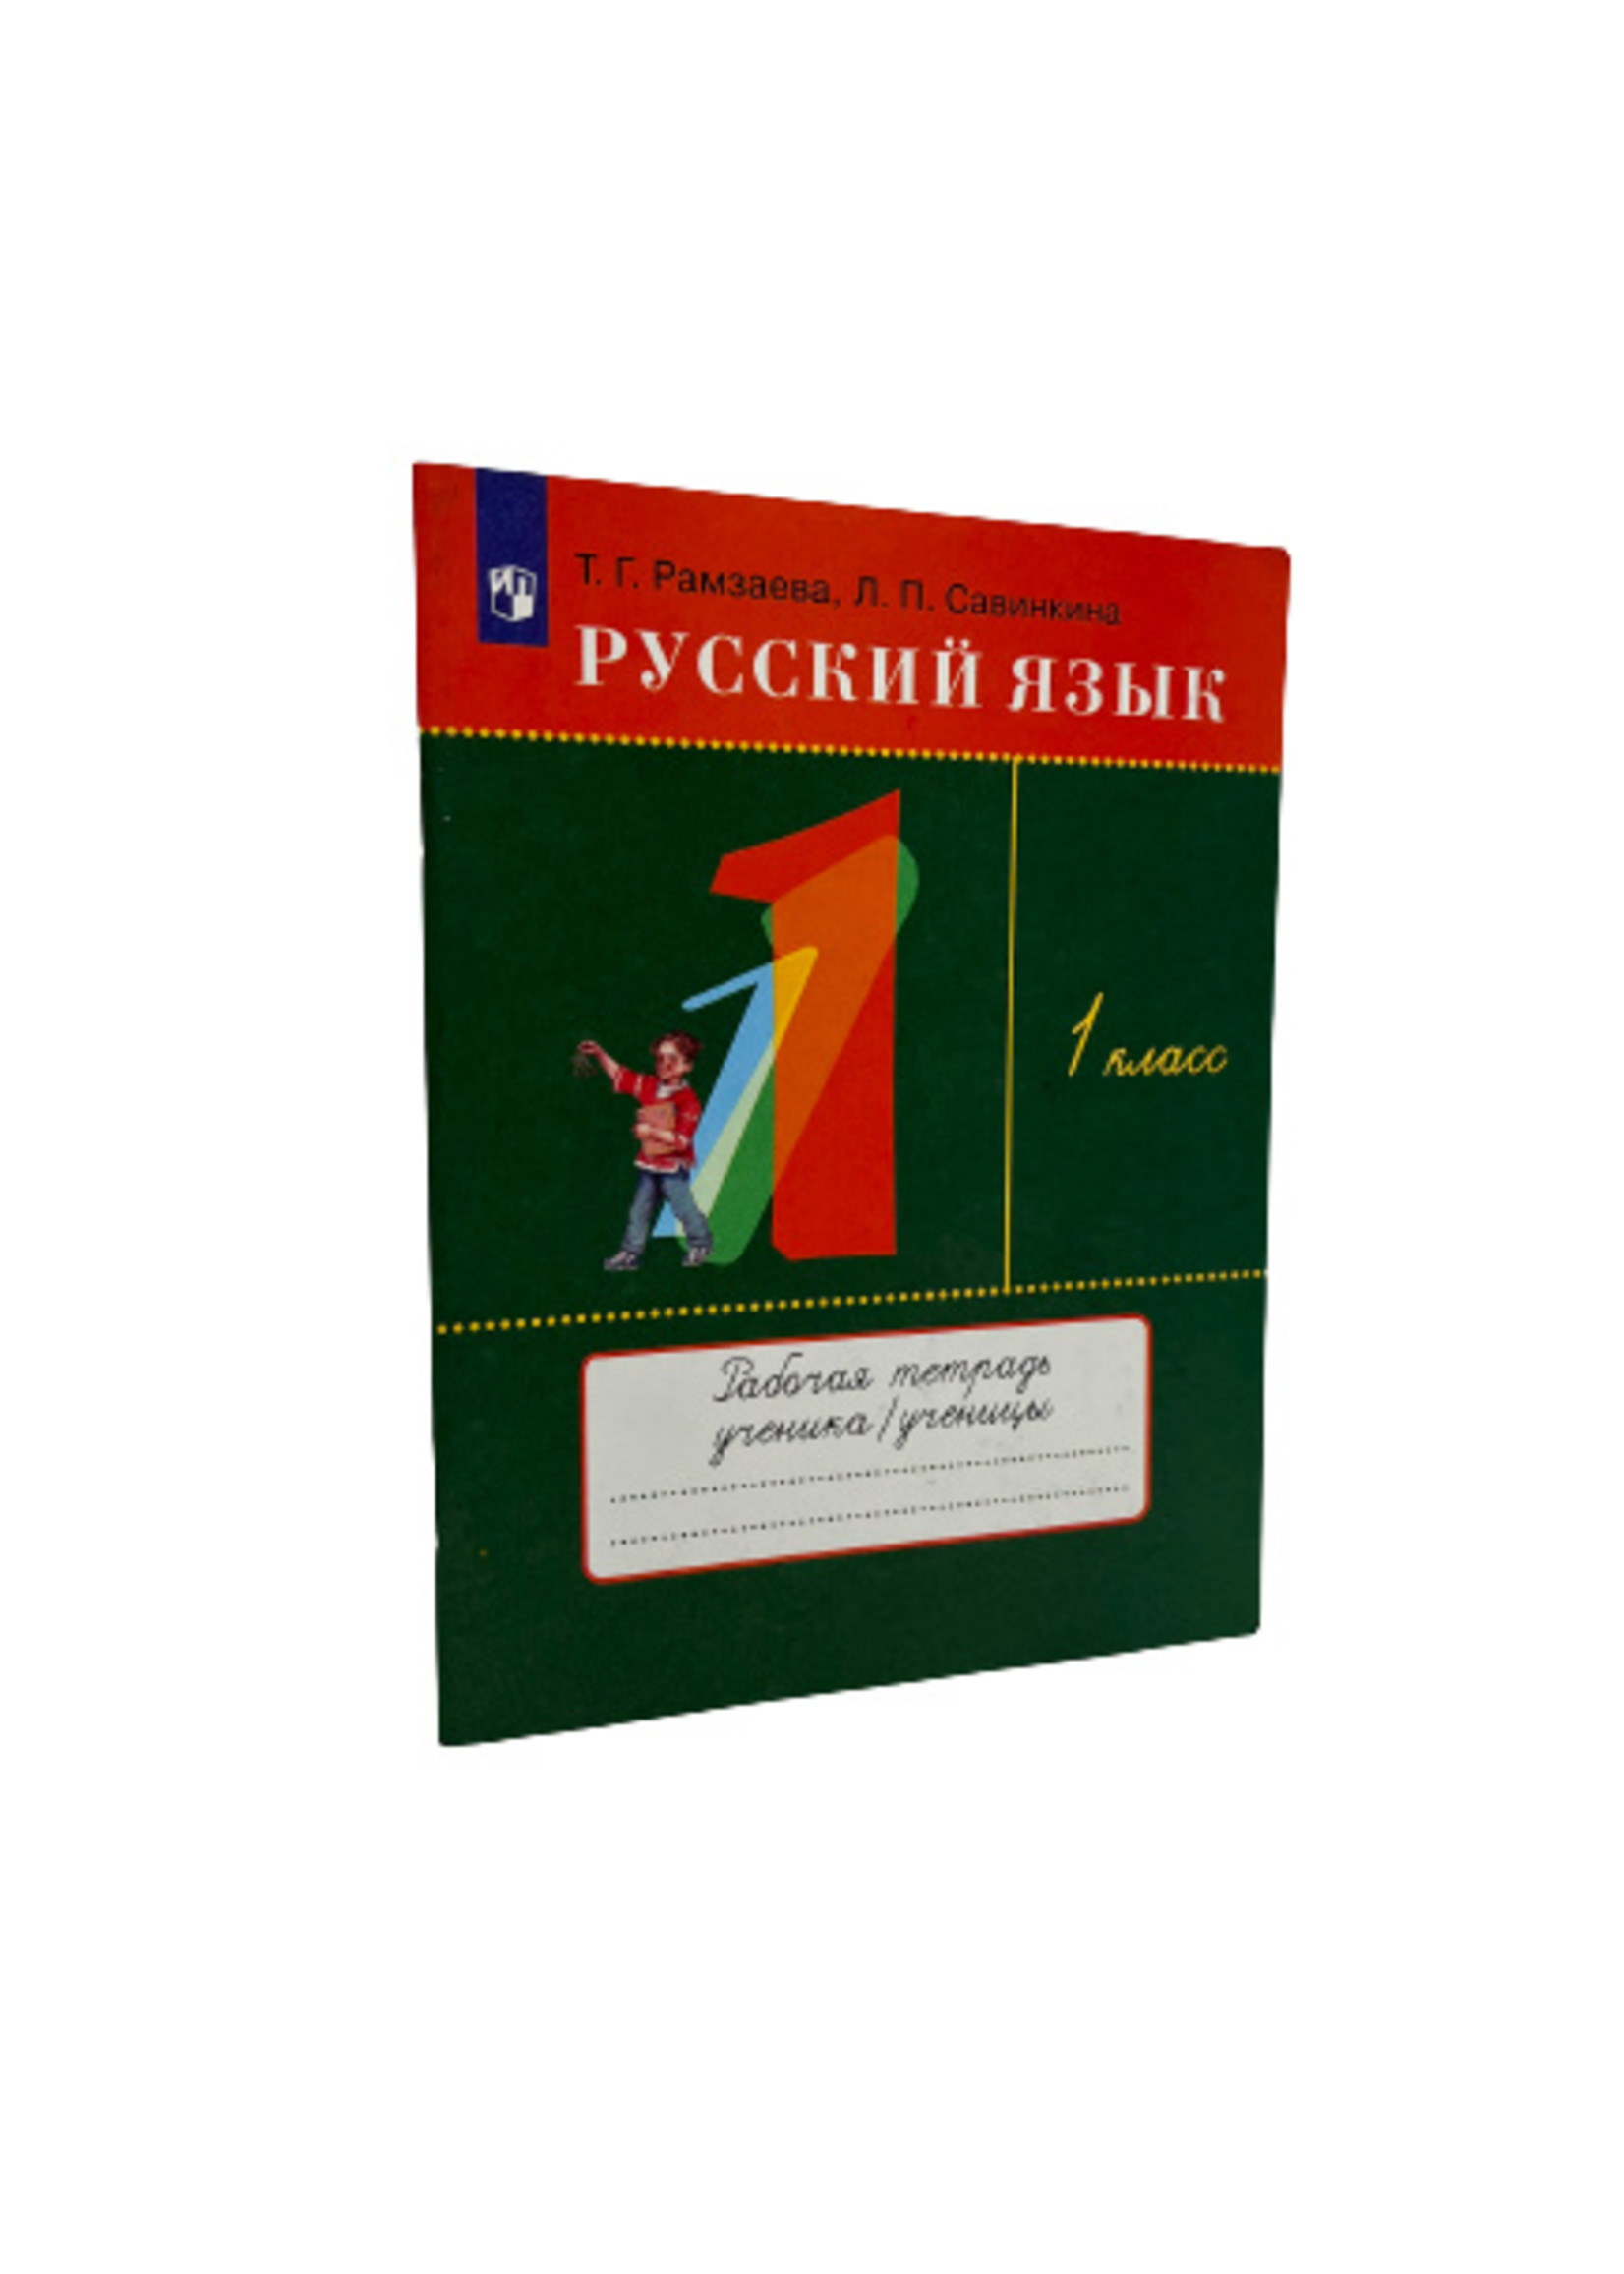 Русский Язык 1 Класс - Рабочая Тетрадь, Рамзаева и Савинкина